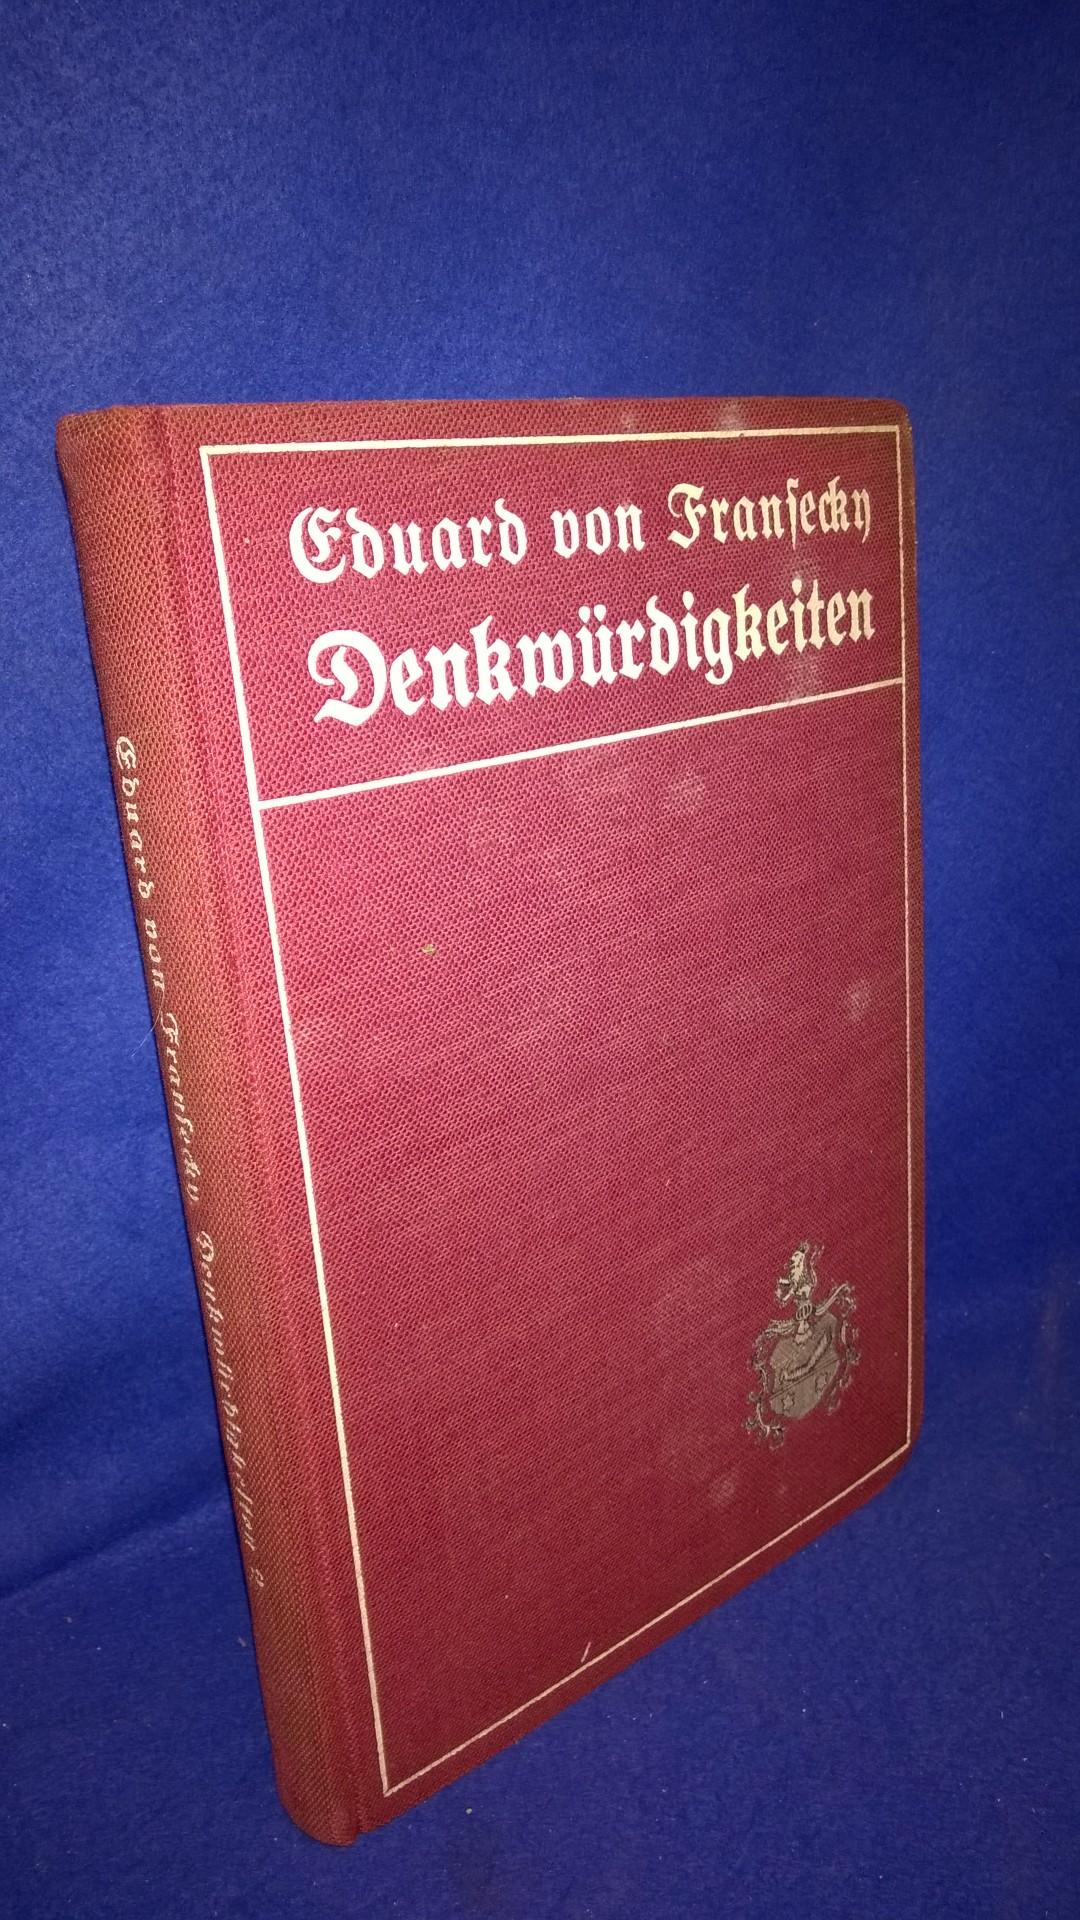 Denkwürdigkeiten des Preussischen Generals der Infanterie Eduard von Fransecky. Band 2: Die Feldzüge 1866 und 1870/71.